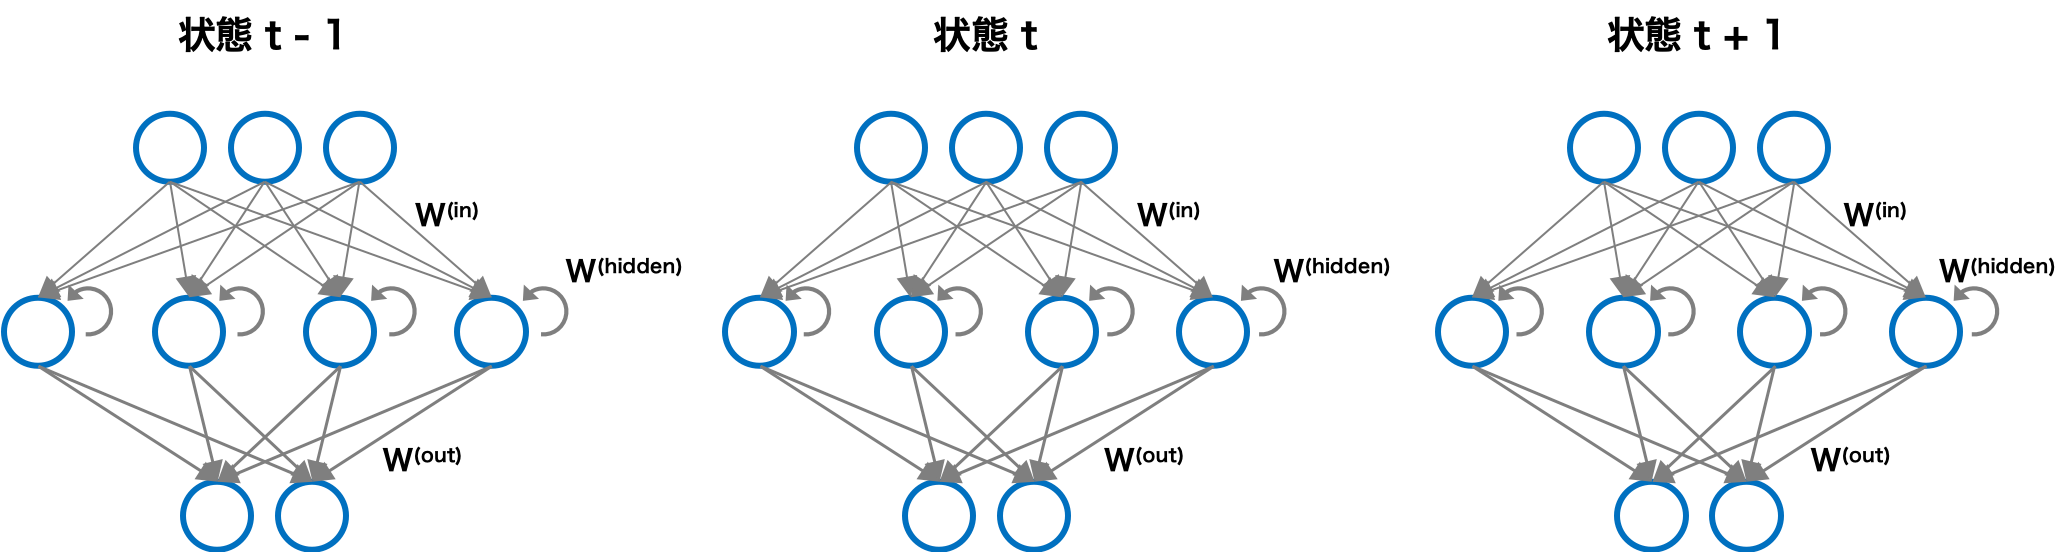 再帰型ニューラルネットワークの構造（畳み込み表現）